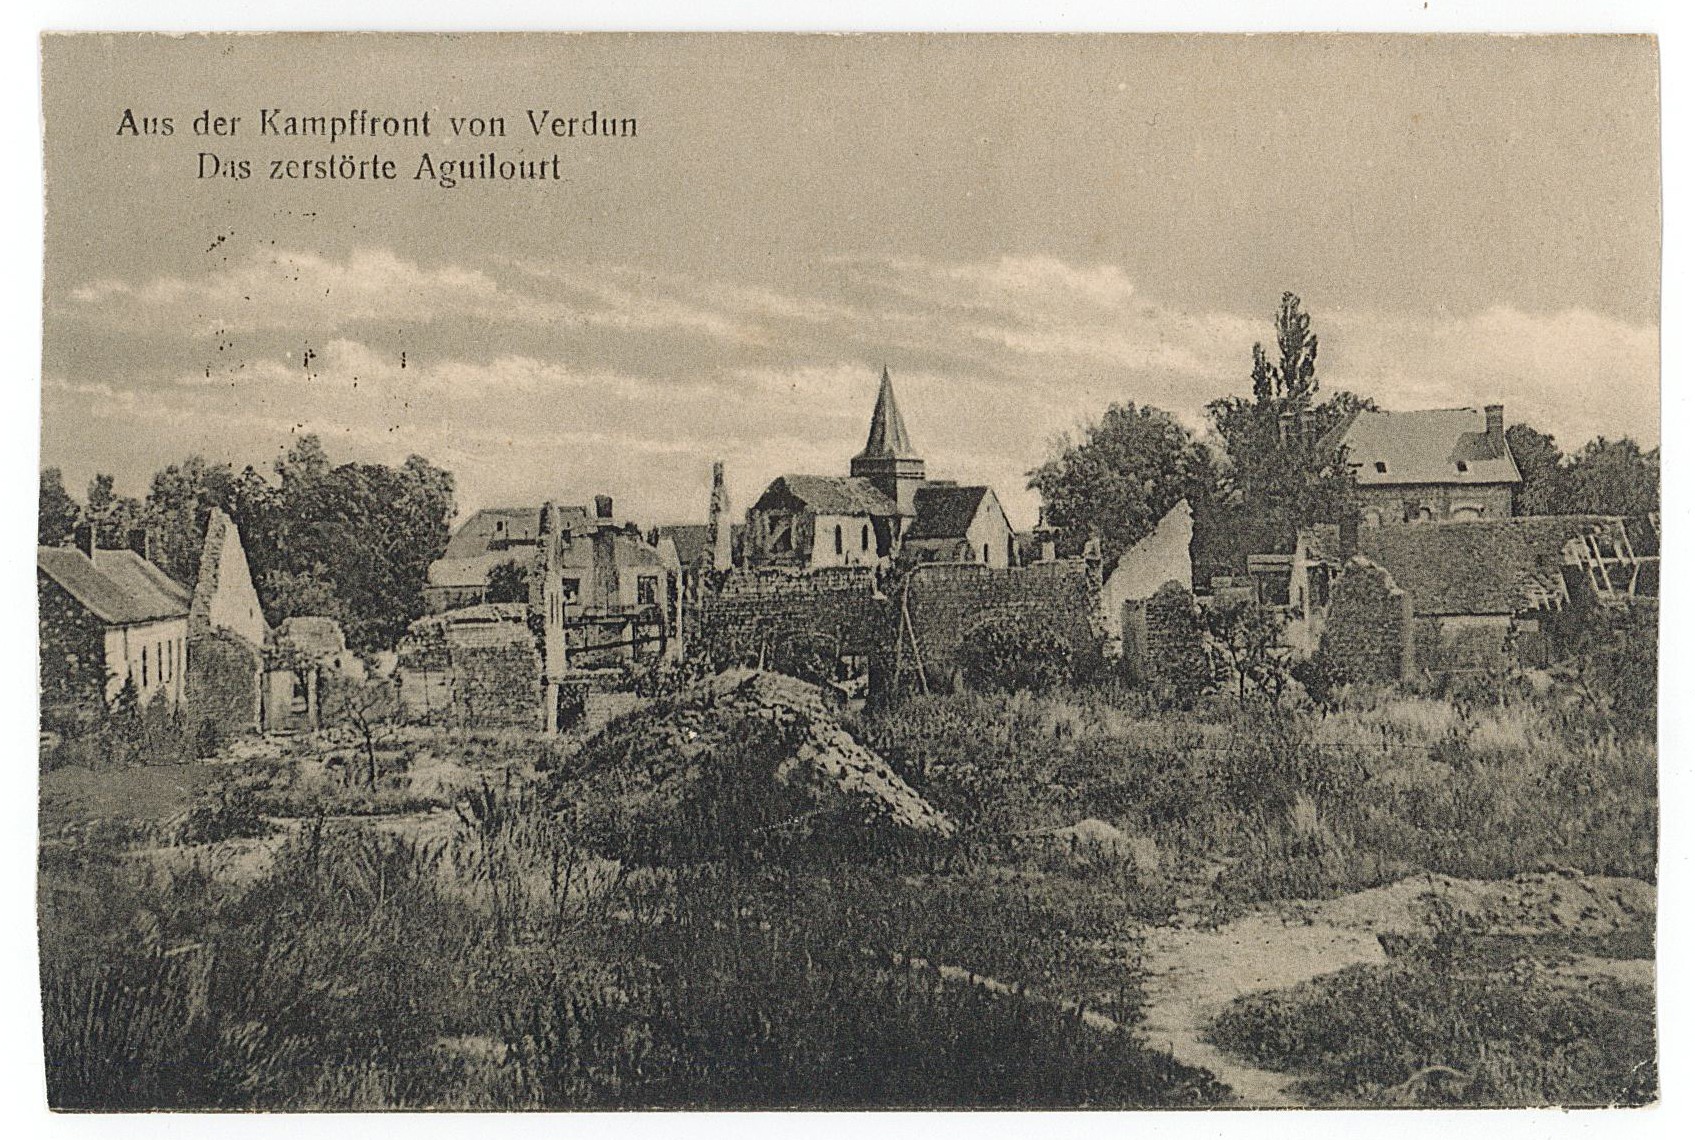 Postkarte von Erich Otto an seinen Vater Hermann Otto, 28.02.1918 (Museum Wolmirstedt RR-F)